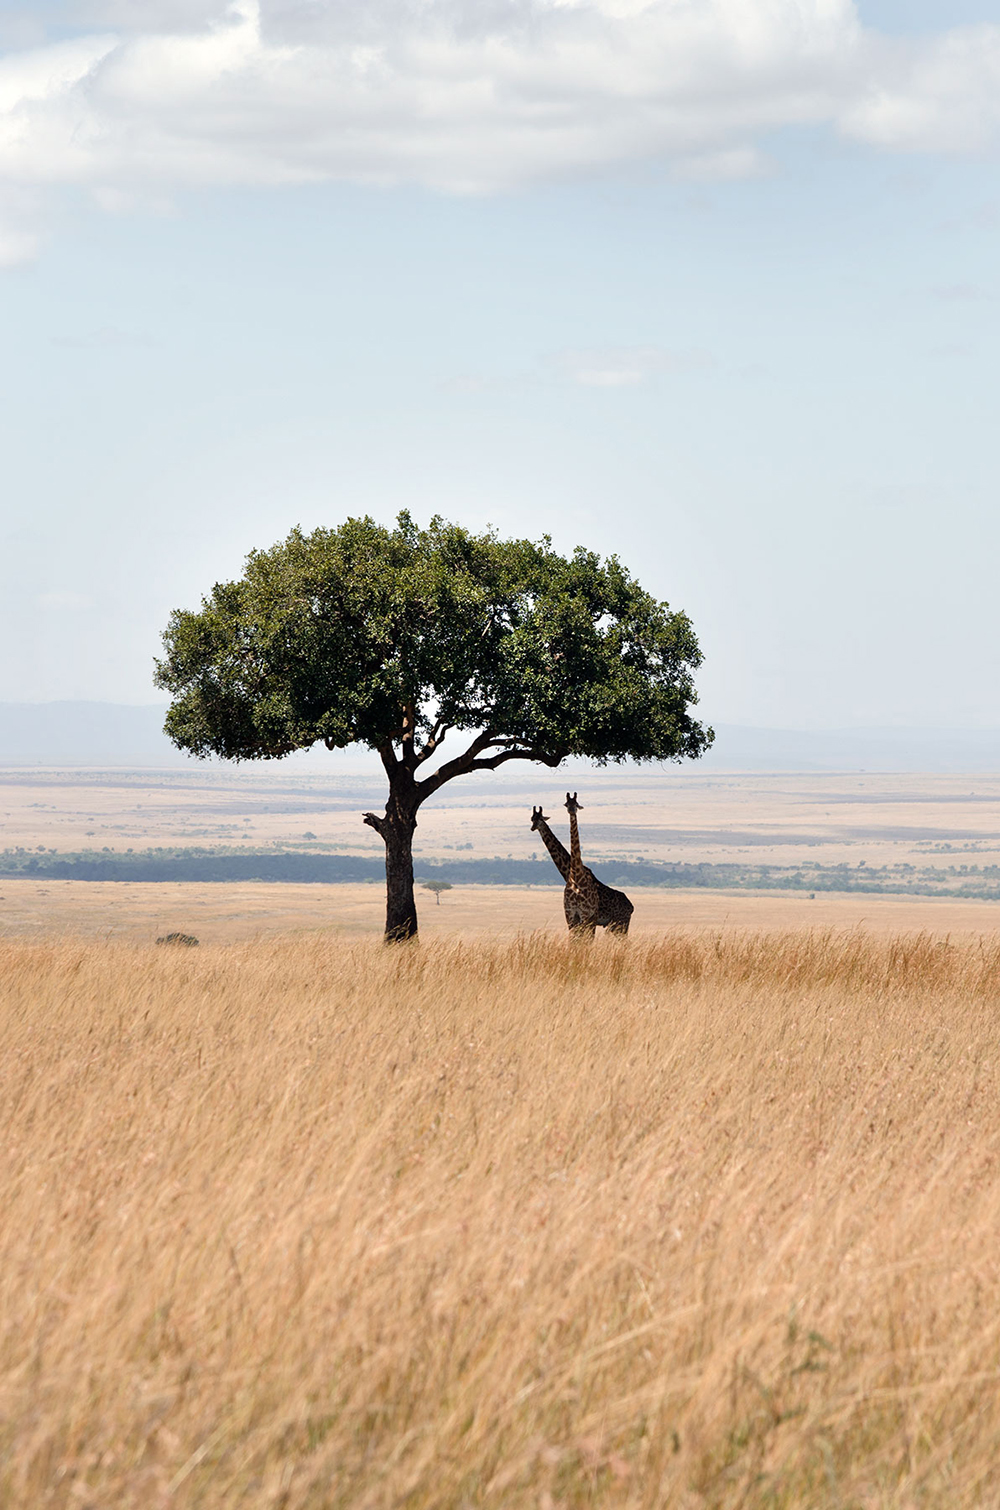 kenya masai mara: come organizzare un safari